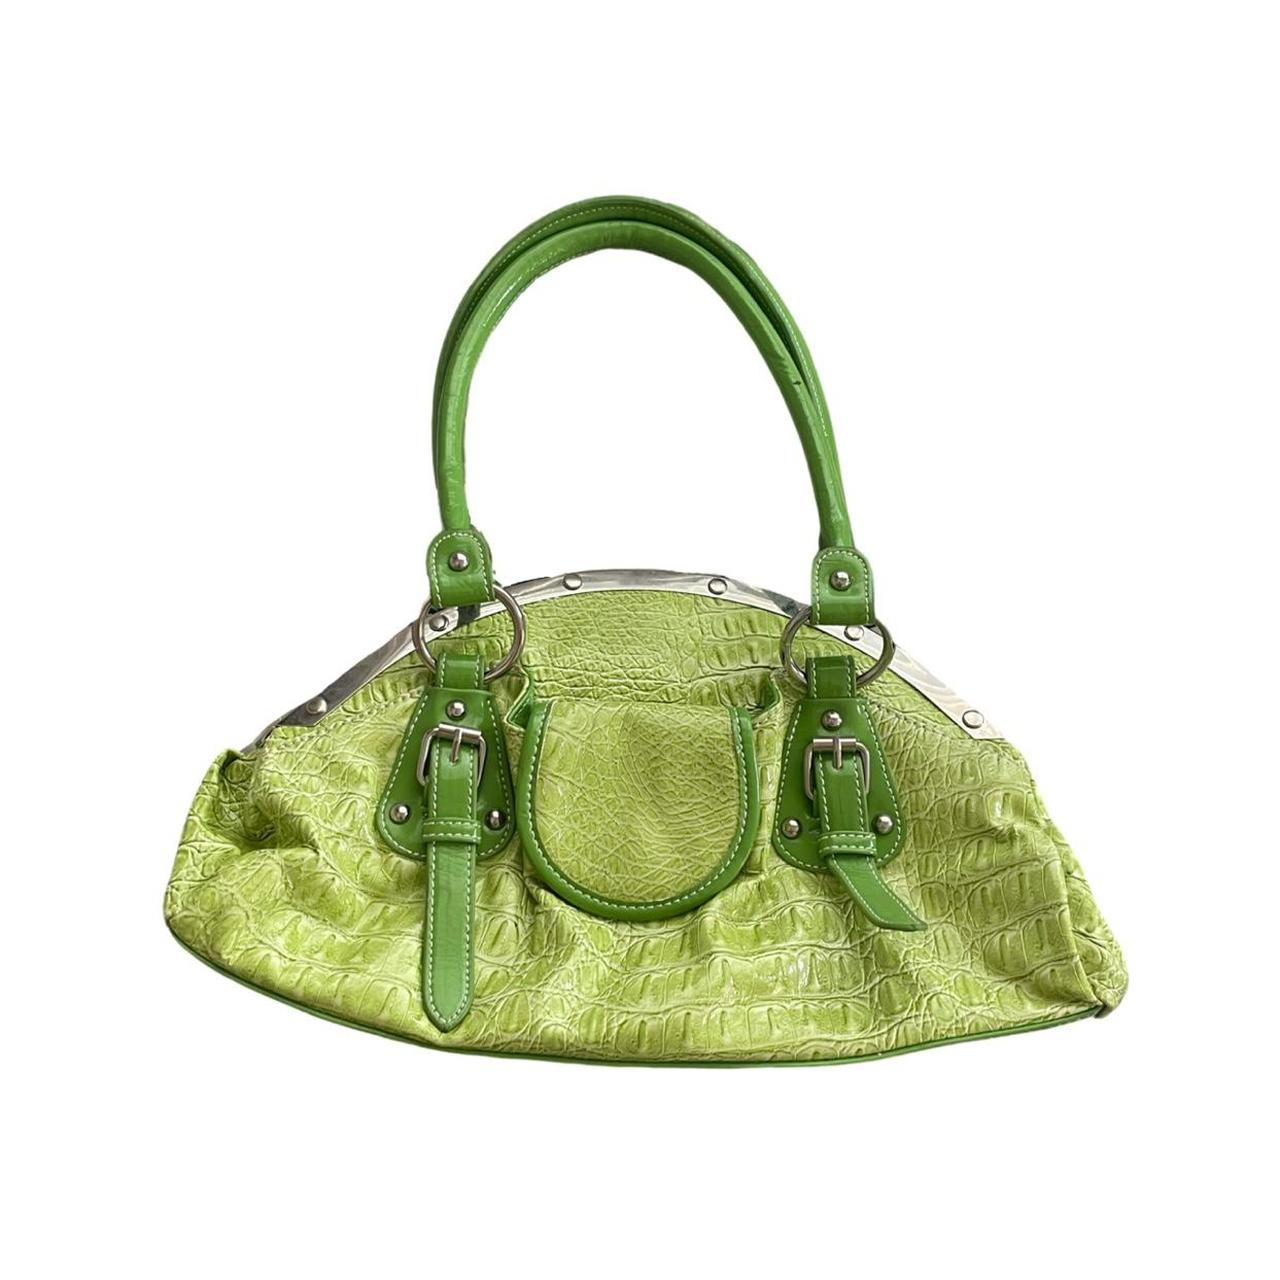 STUNNING Y2K Green Snakeskin Purse This bag is so... - Depop